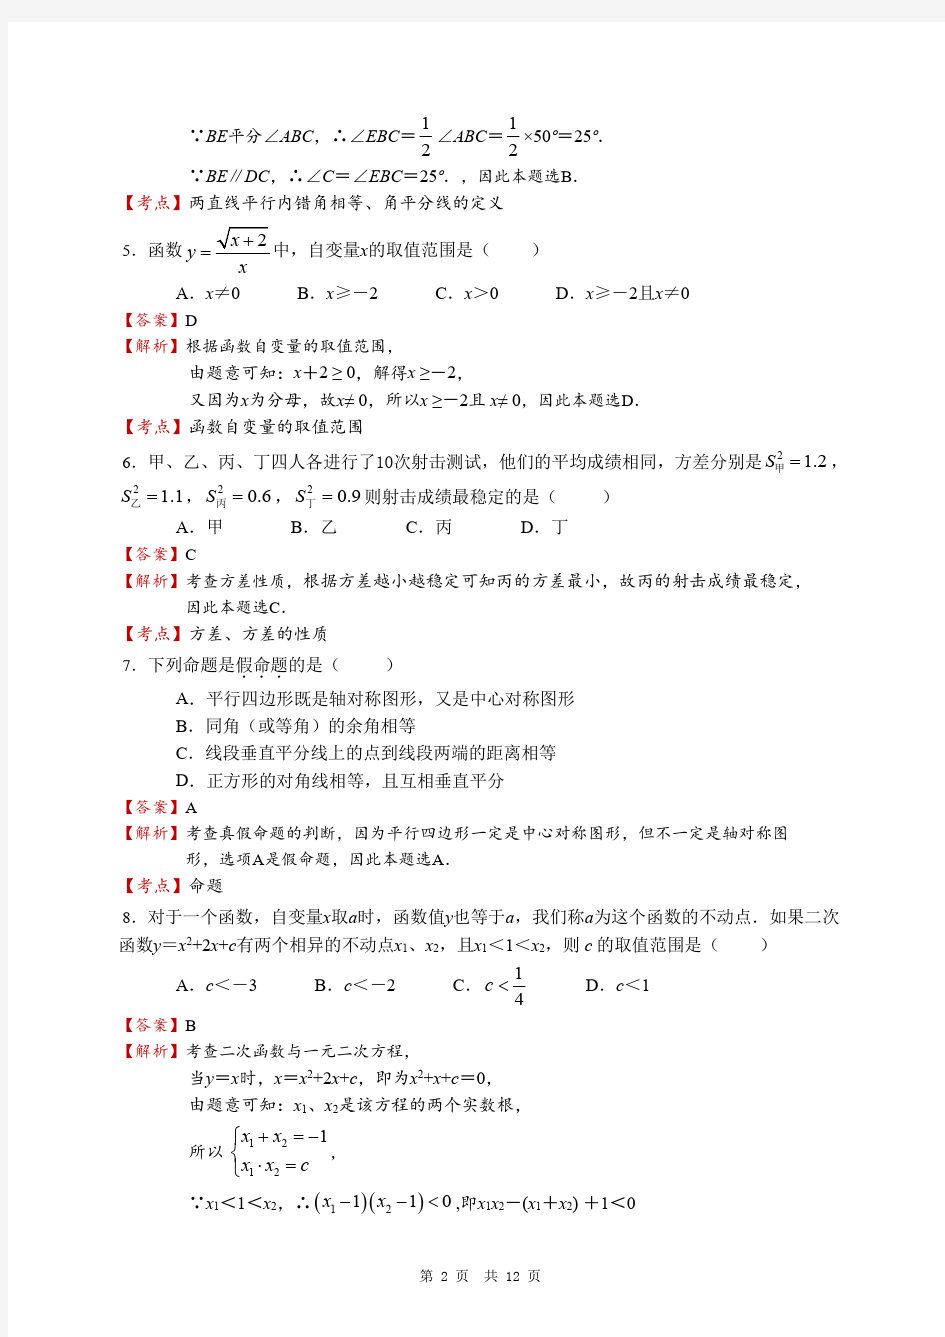 2019年湖南中考真题数学试题(附答案解析,含考点分析)